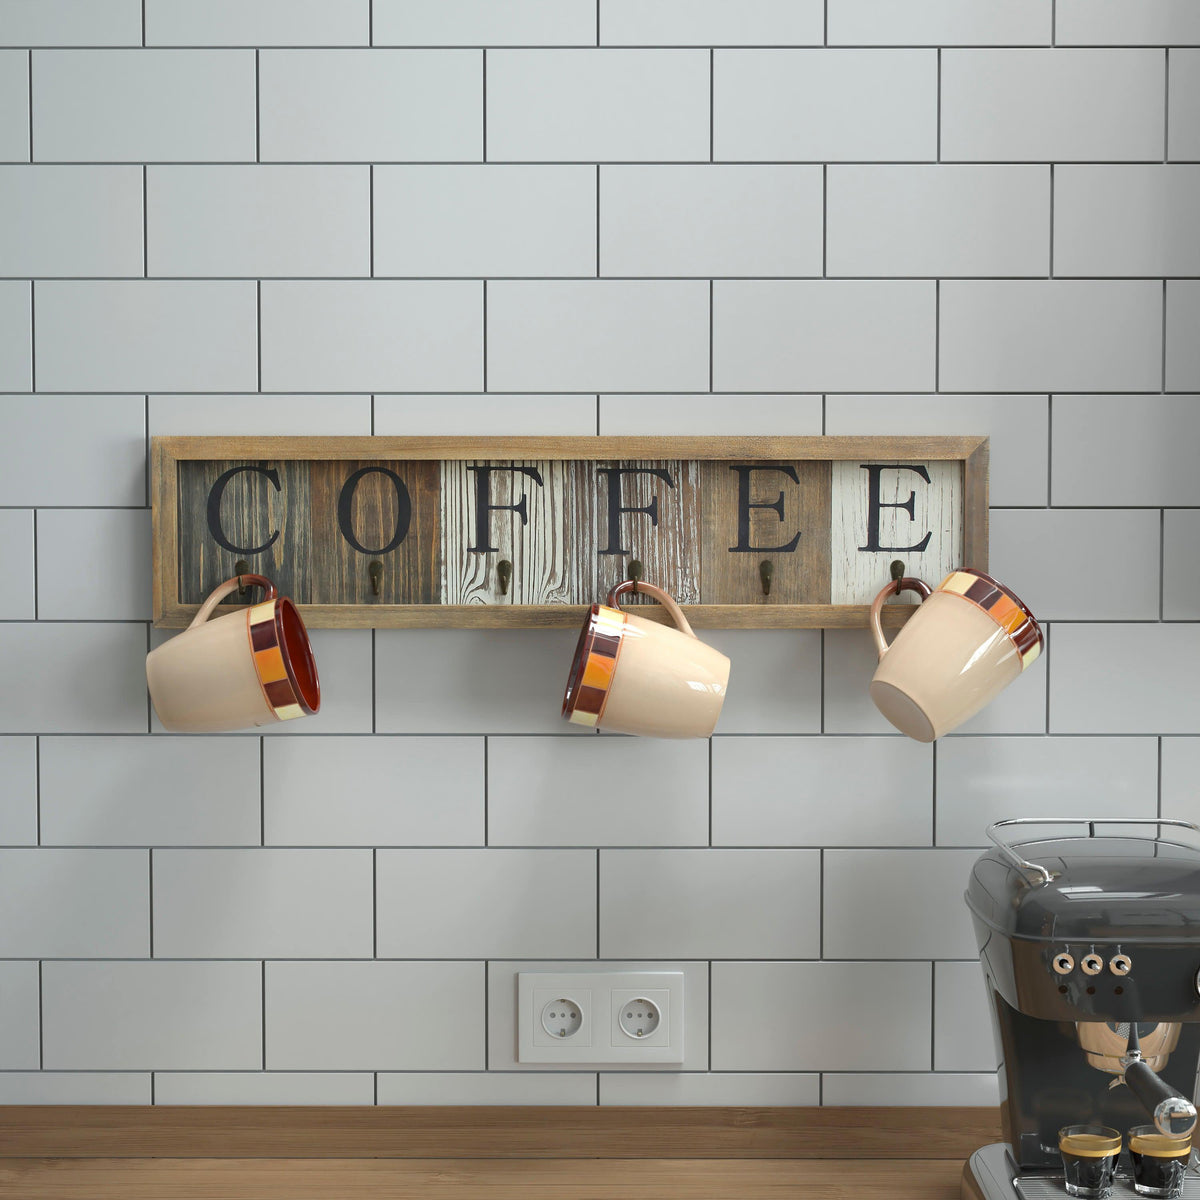 6 Cup Wall Mount Printed Coffee Mug Rack in Distressed Wood Grains